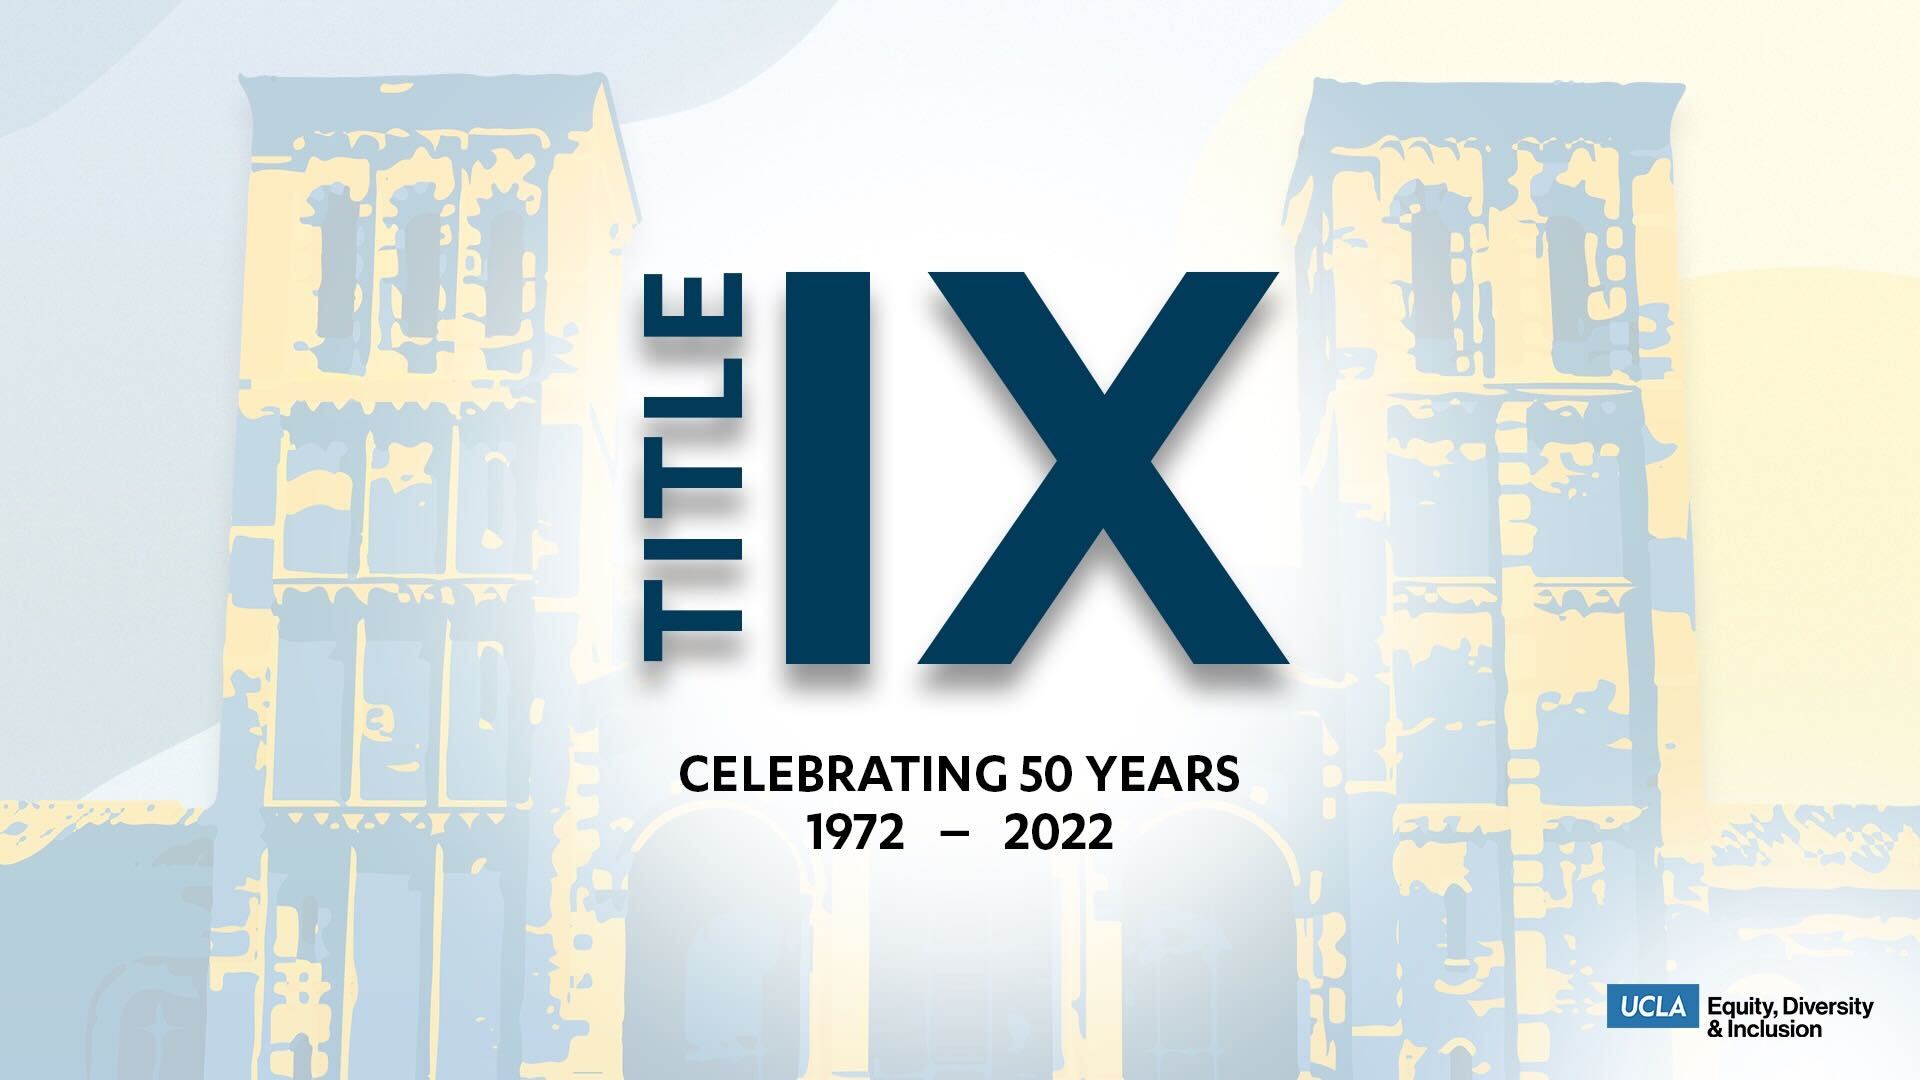 celebrating 50 years of title ix (1972-2022)